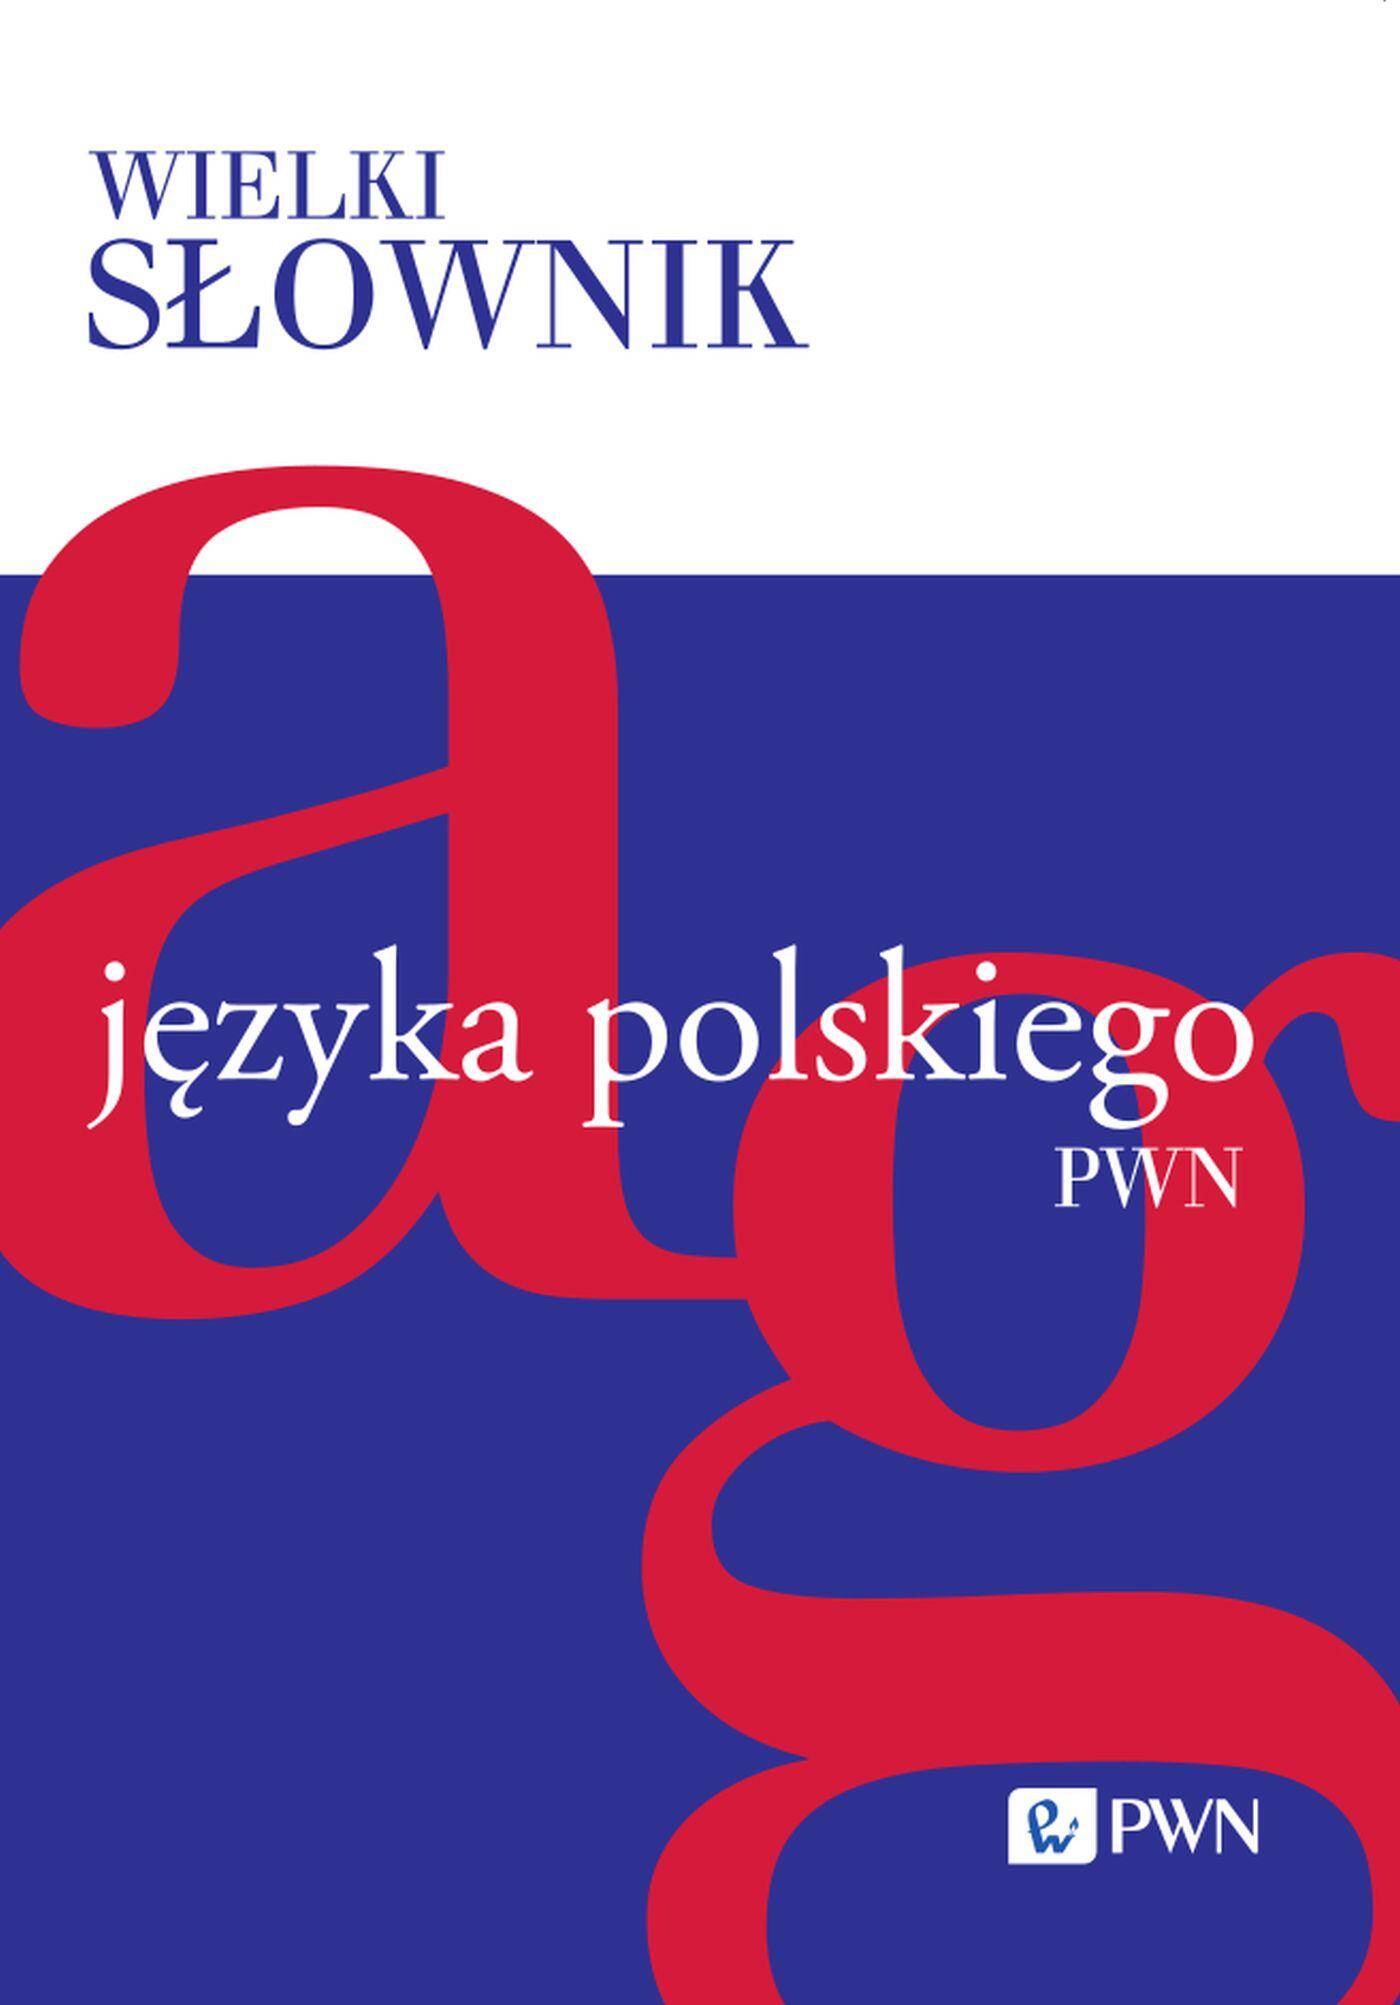 Wielki słownik języka polskiego PWN Tom I